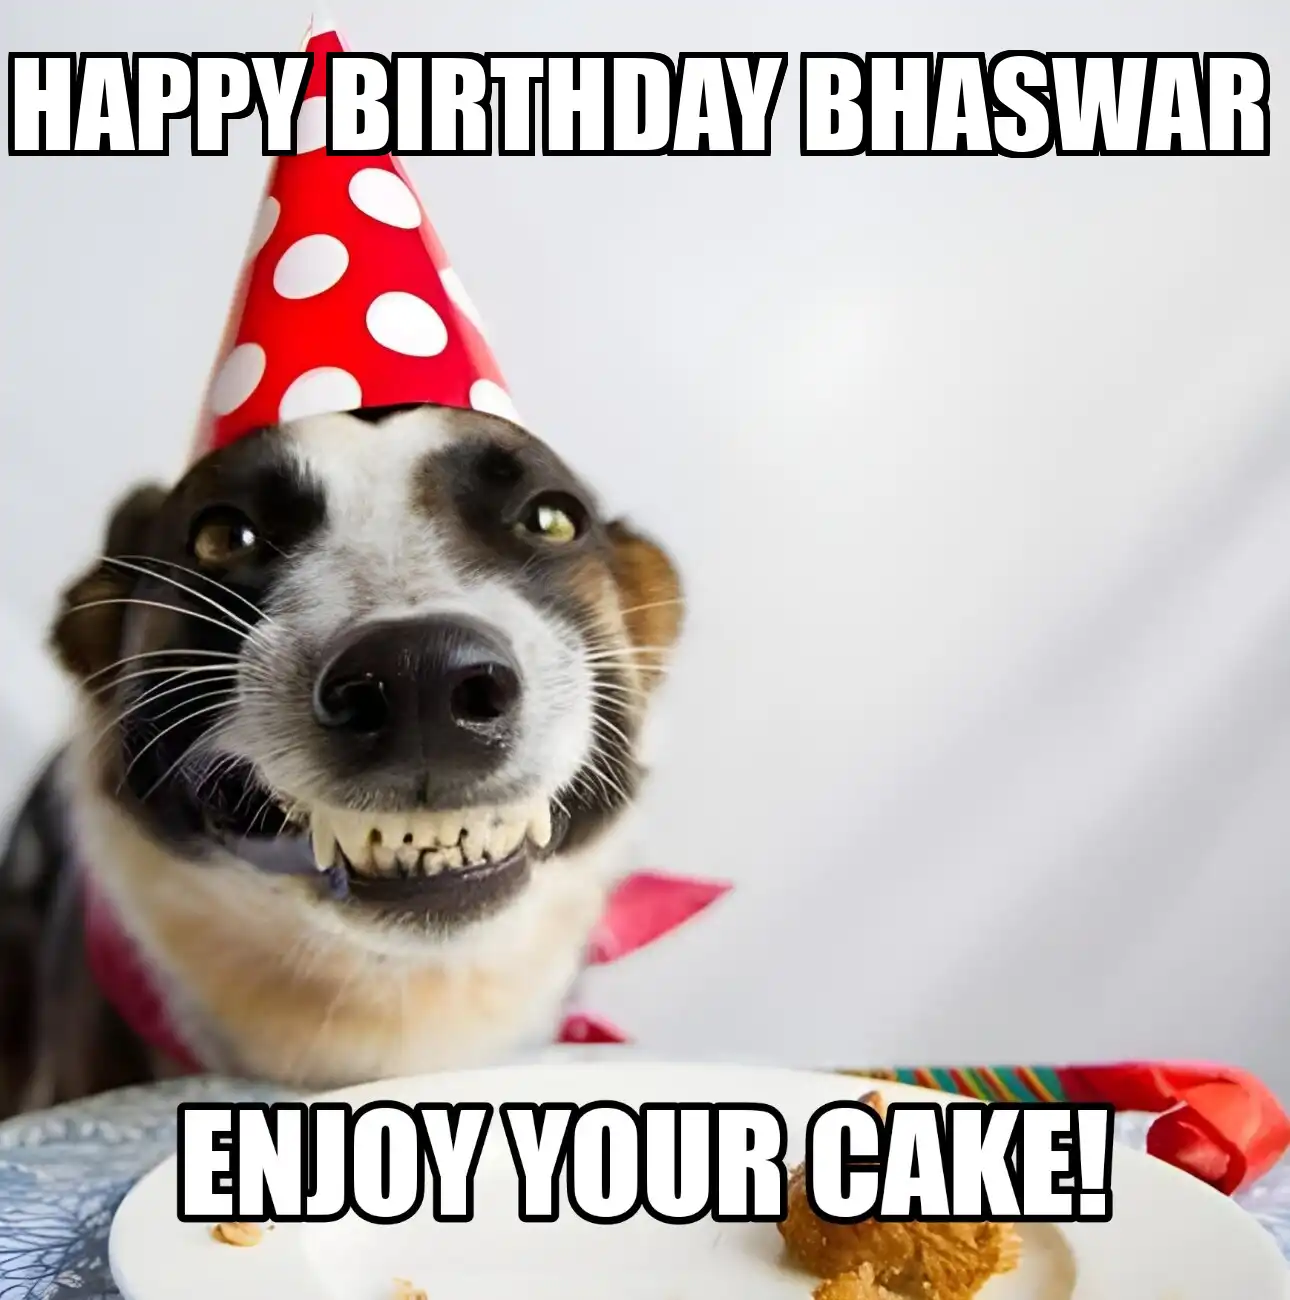 Happy Birthday Bhaswar Enjoy Your Cake Dog Meme